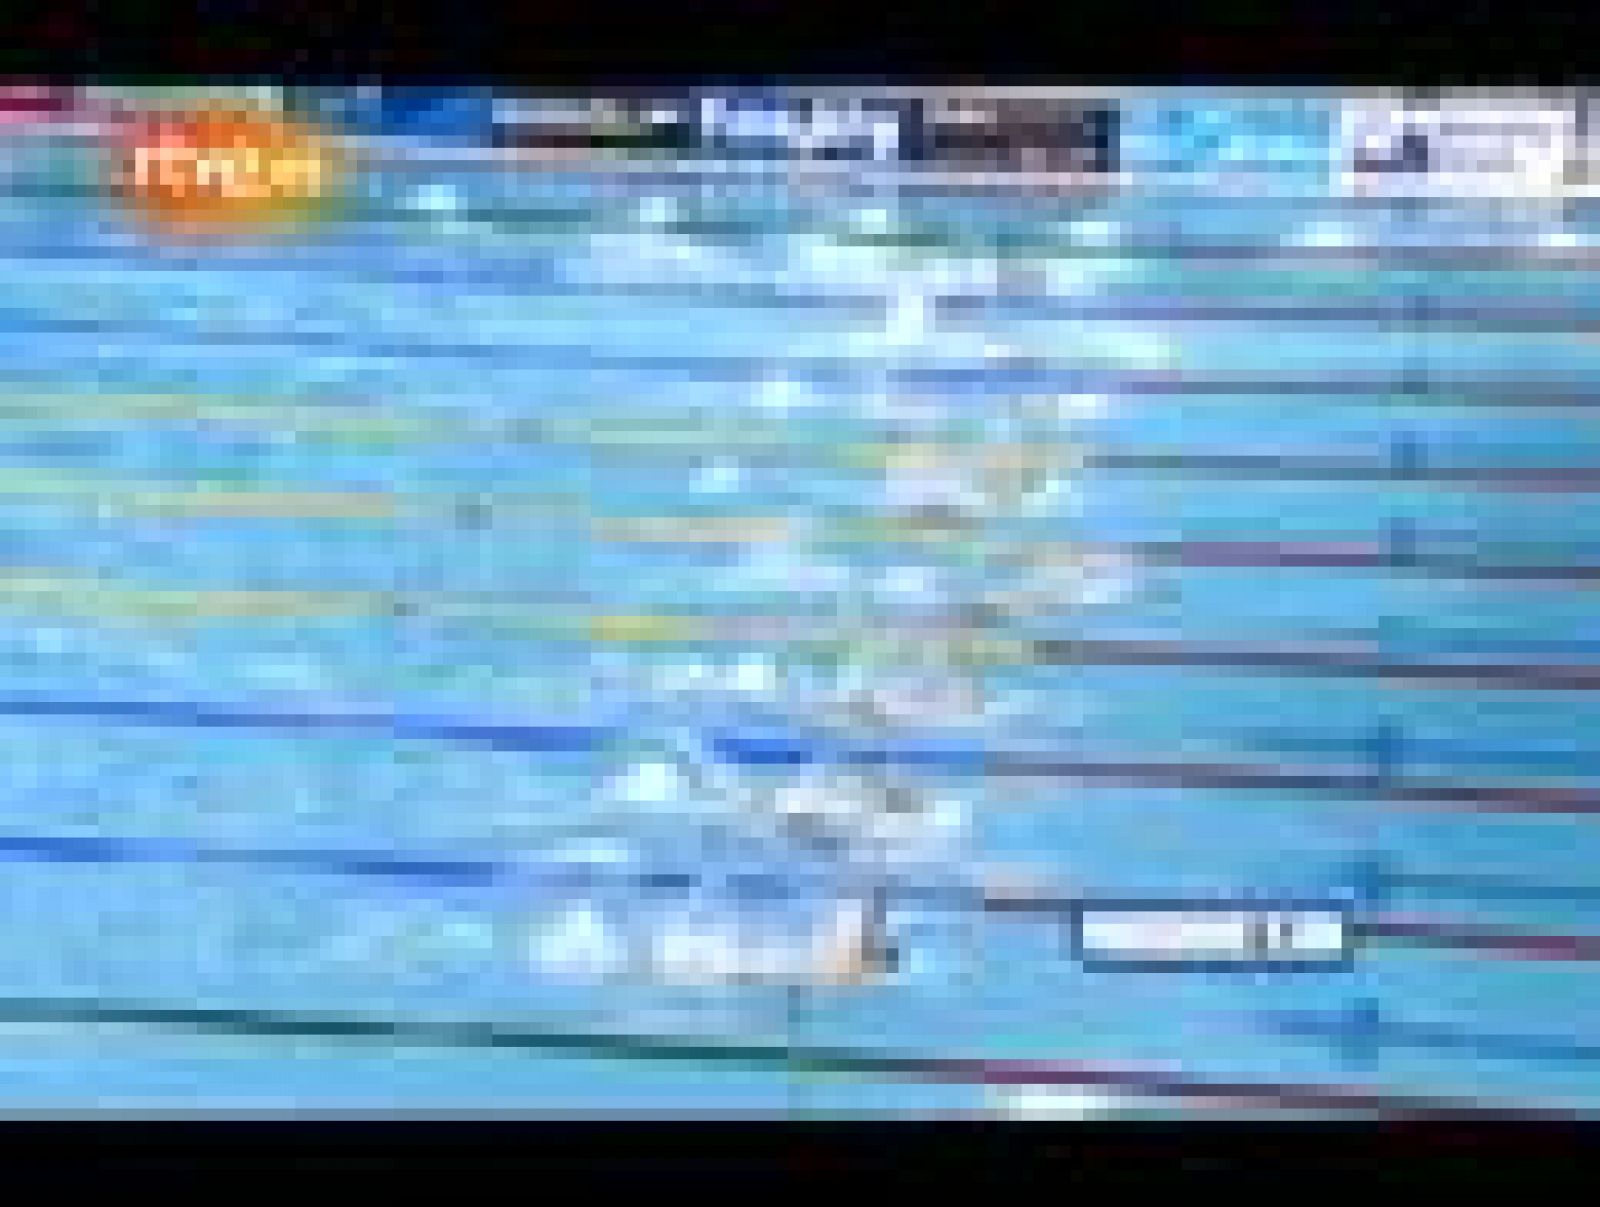 El español Aschwin Wildeboer ha ganado la medalla de bronce en los 100 metros espalda en piscina corta en el Mundial de esta especialidad que se disputa en Dubai 